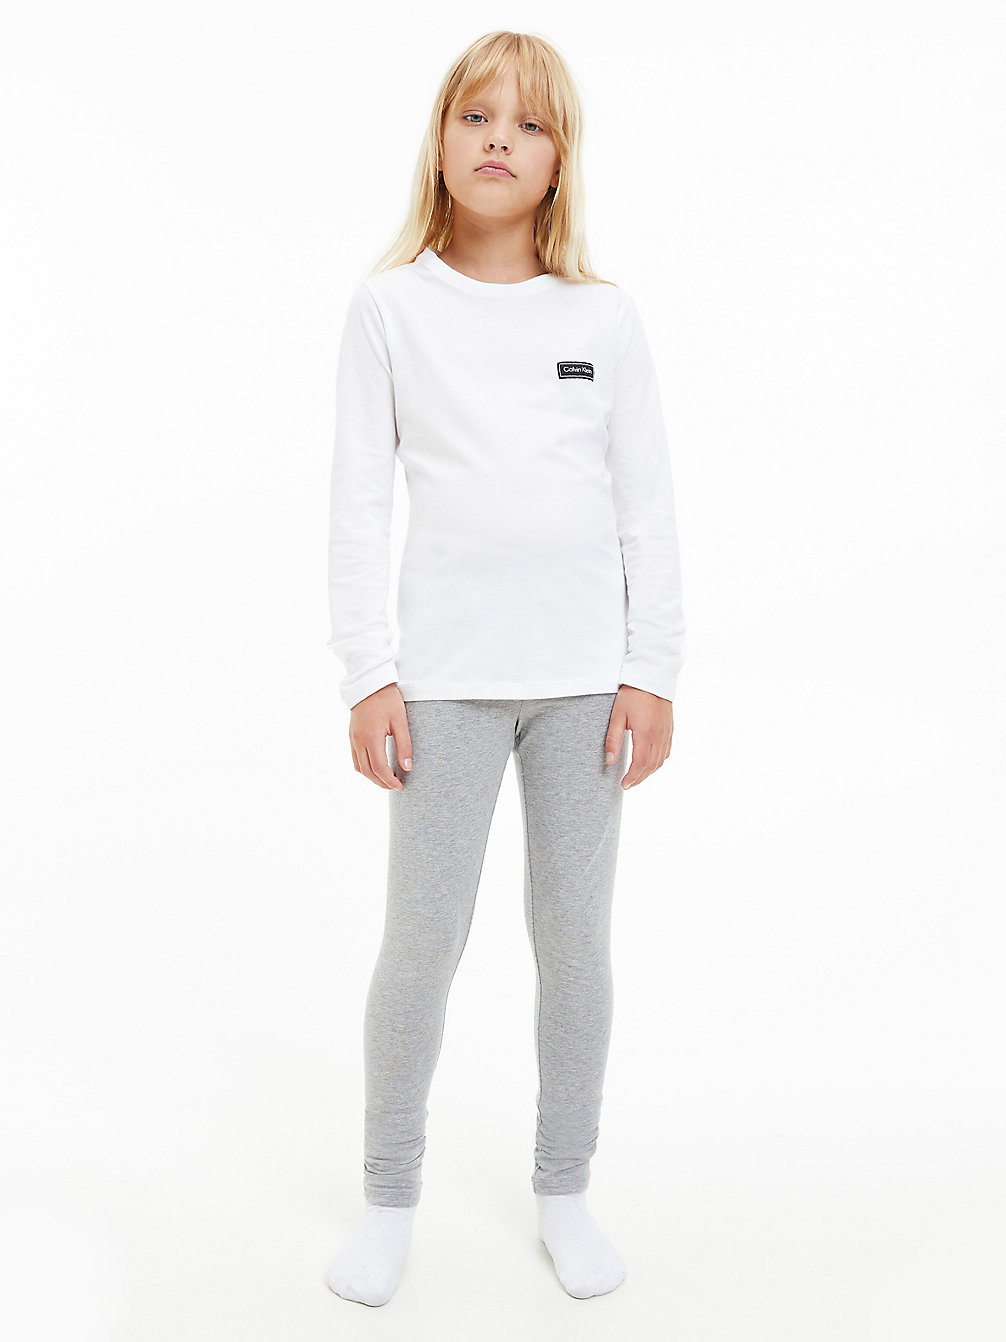 PVHWHITE/W/GREYHEATHER Pyjama Set - Modern Cotton undefined girls Calvin Klein